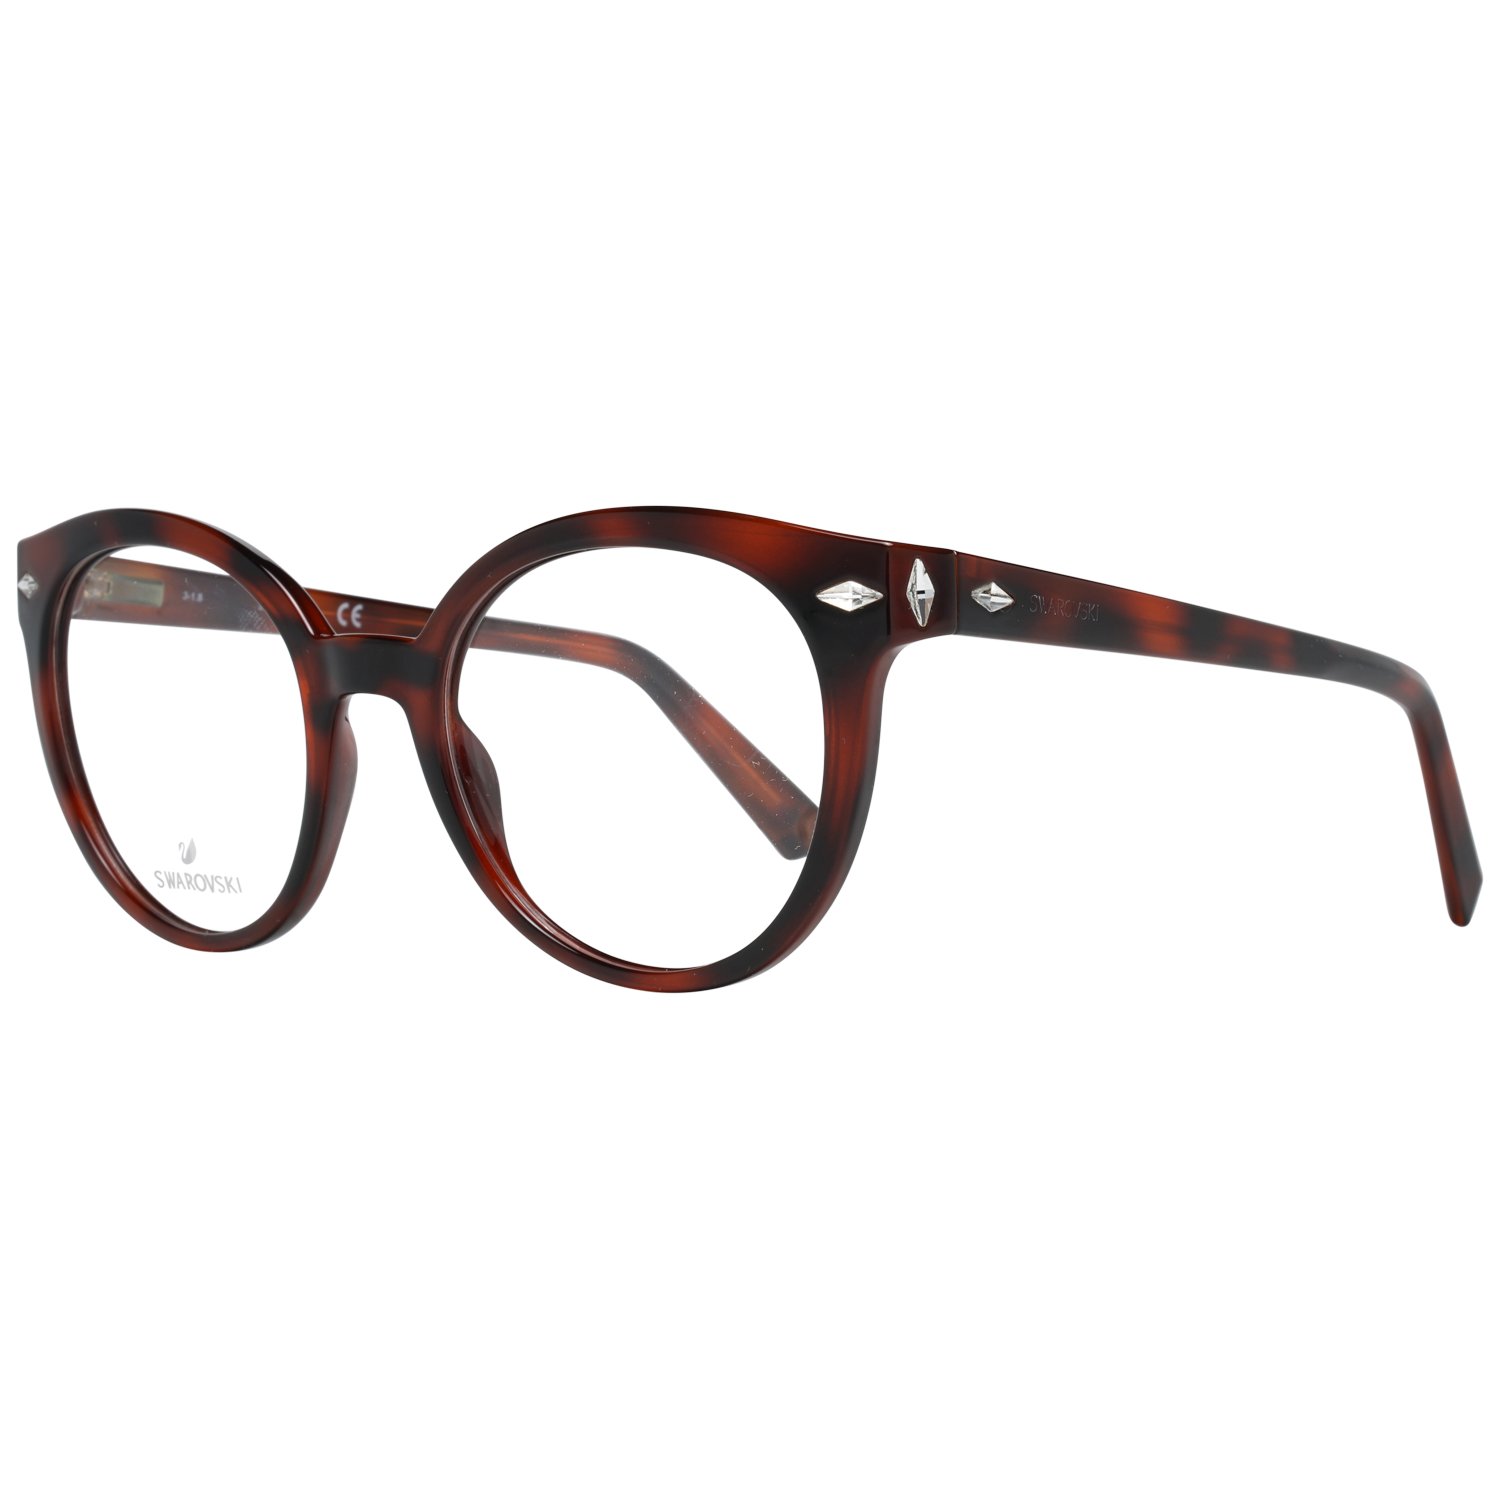 Swarovski Frames Swarovski Women Glasses Optical Frame SK5272 052 50 Eyeglasses Eyewear UK USA Australia 